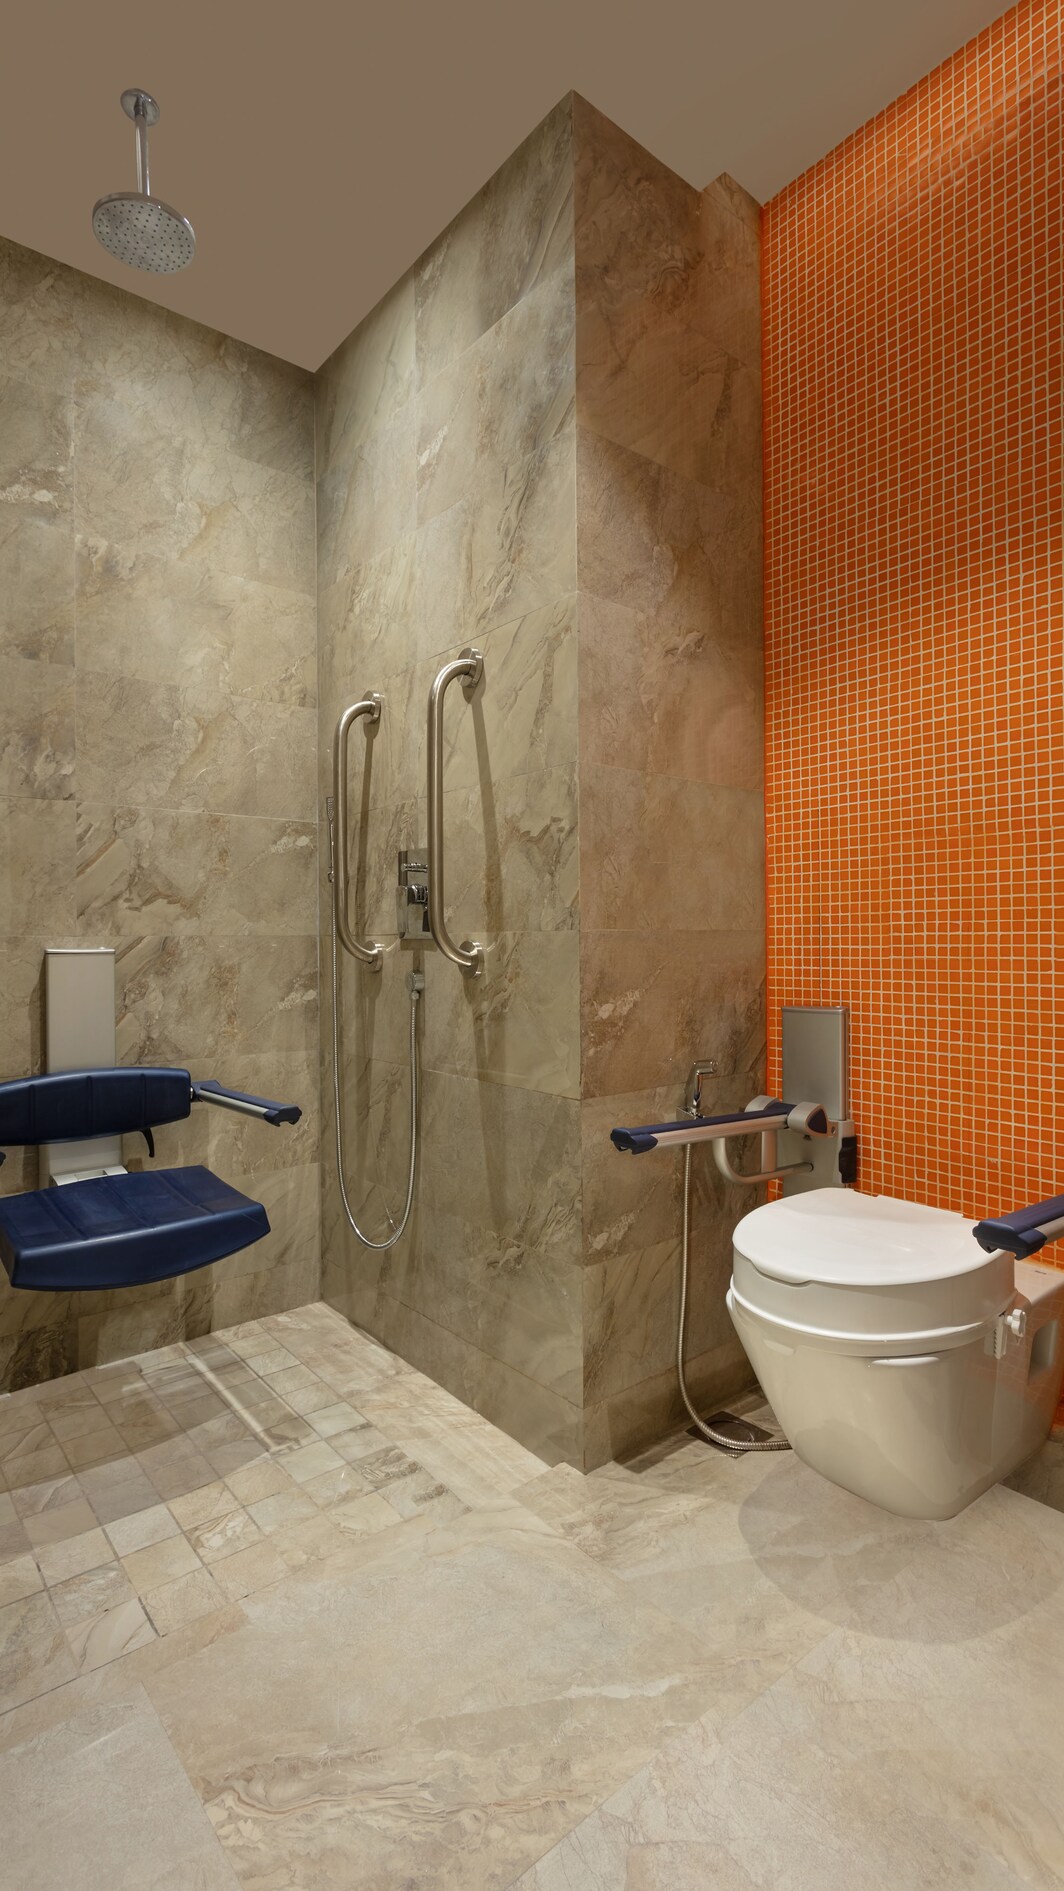 Ванная комната для гостей с ограниченными возможностями